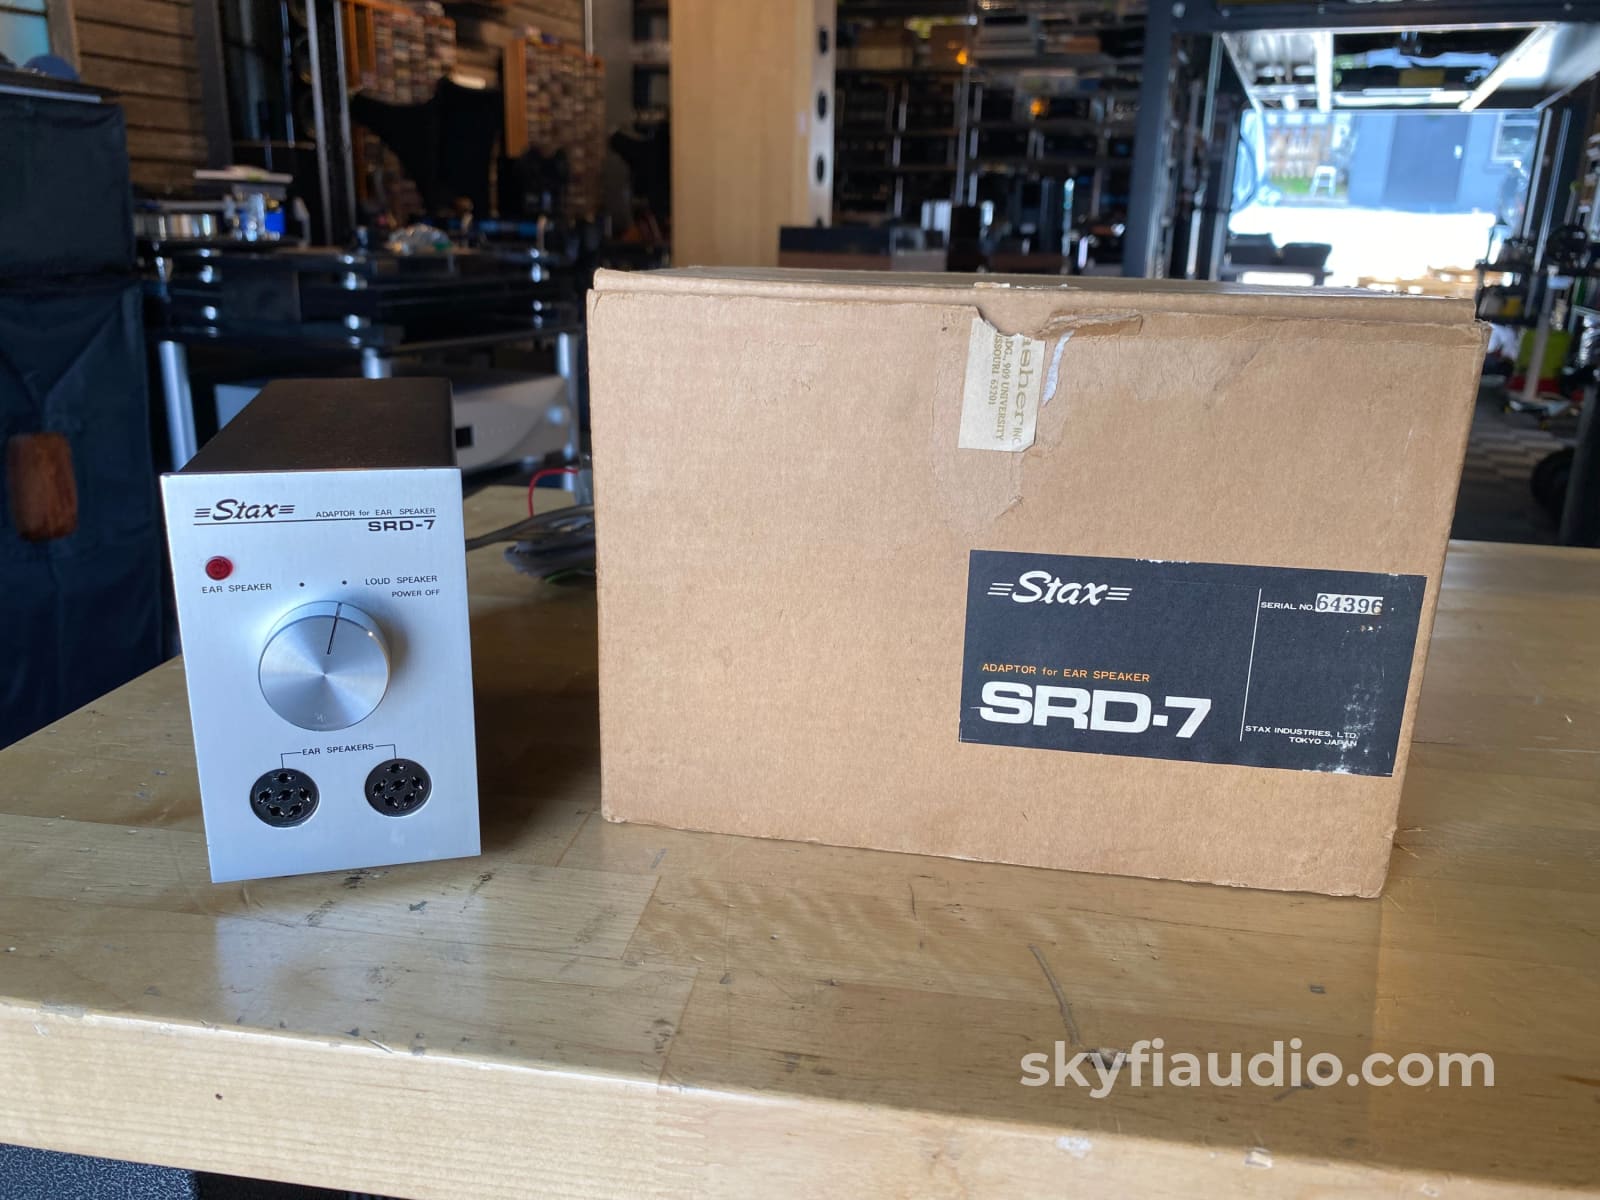 Stax Srd-7 Adapter For Ear Speaker - Electrostatic Headphone Amplifier In Box Accessory